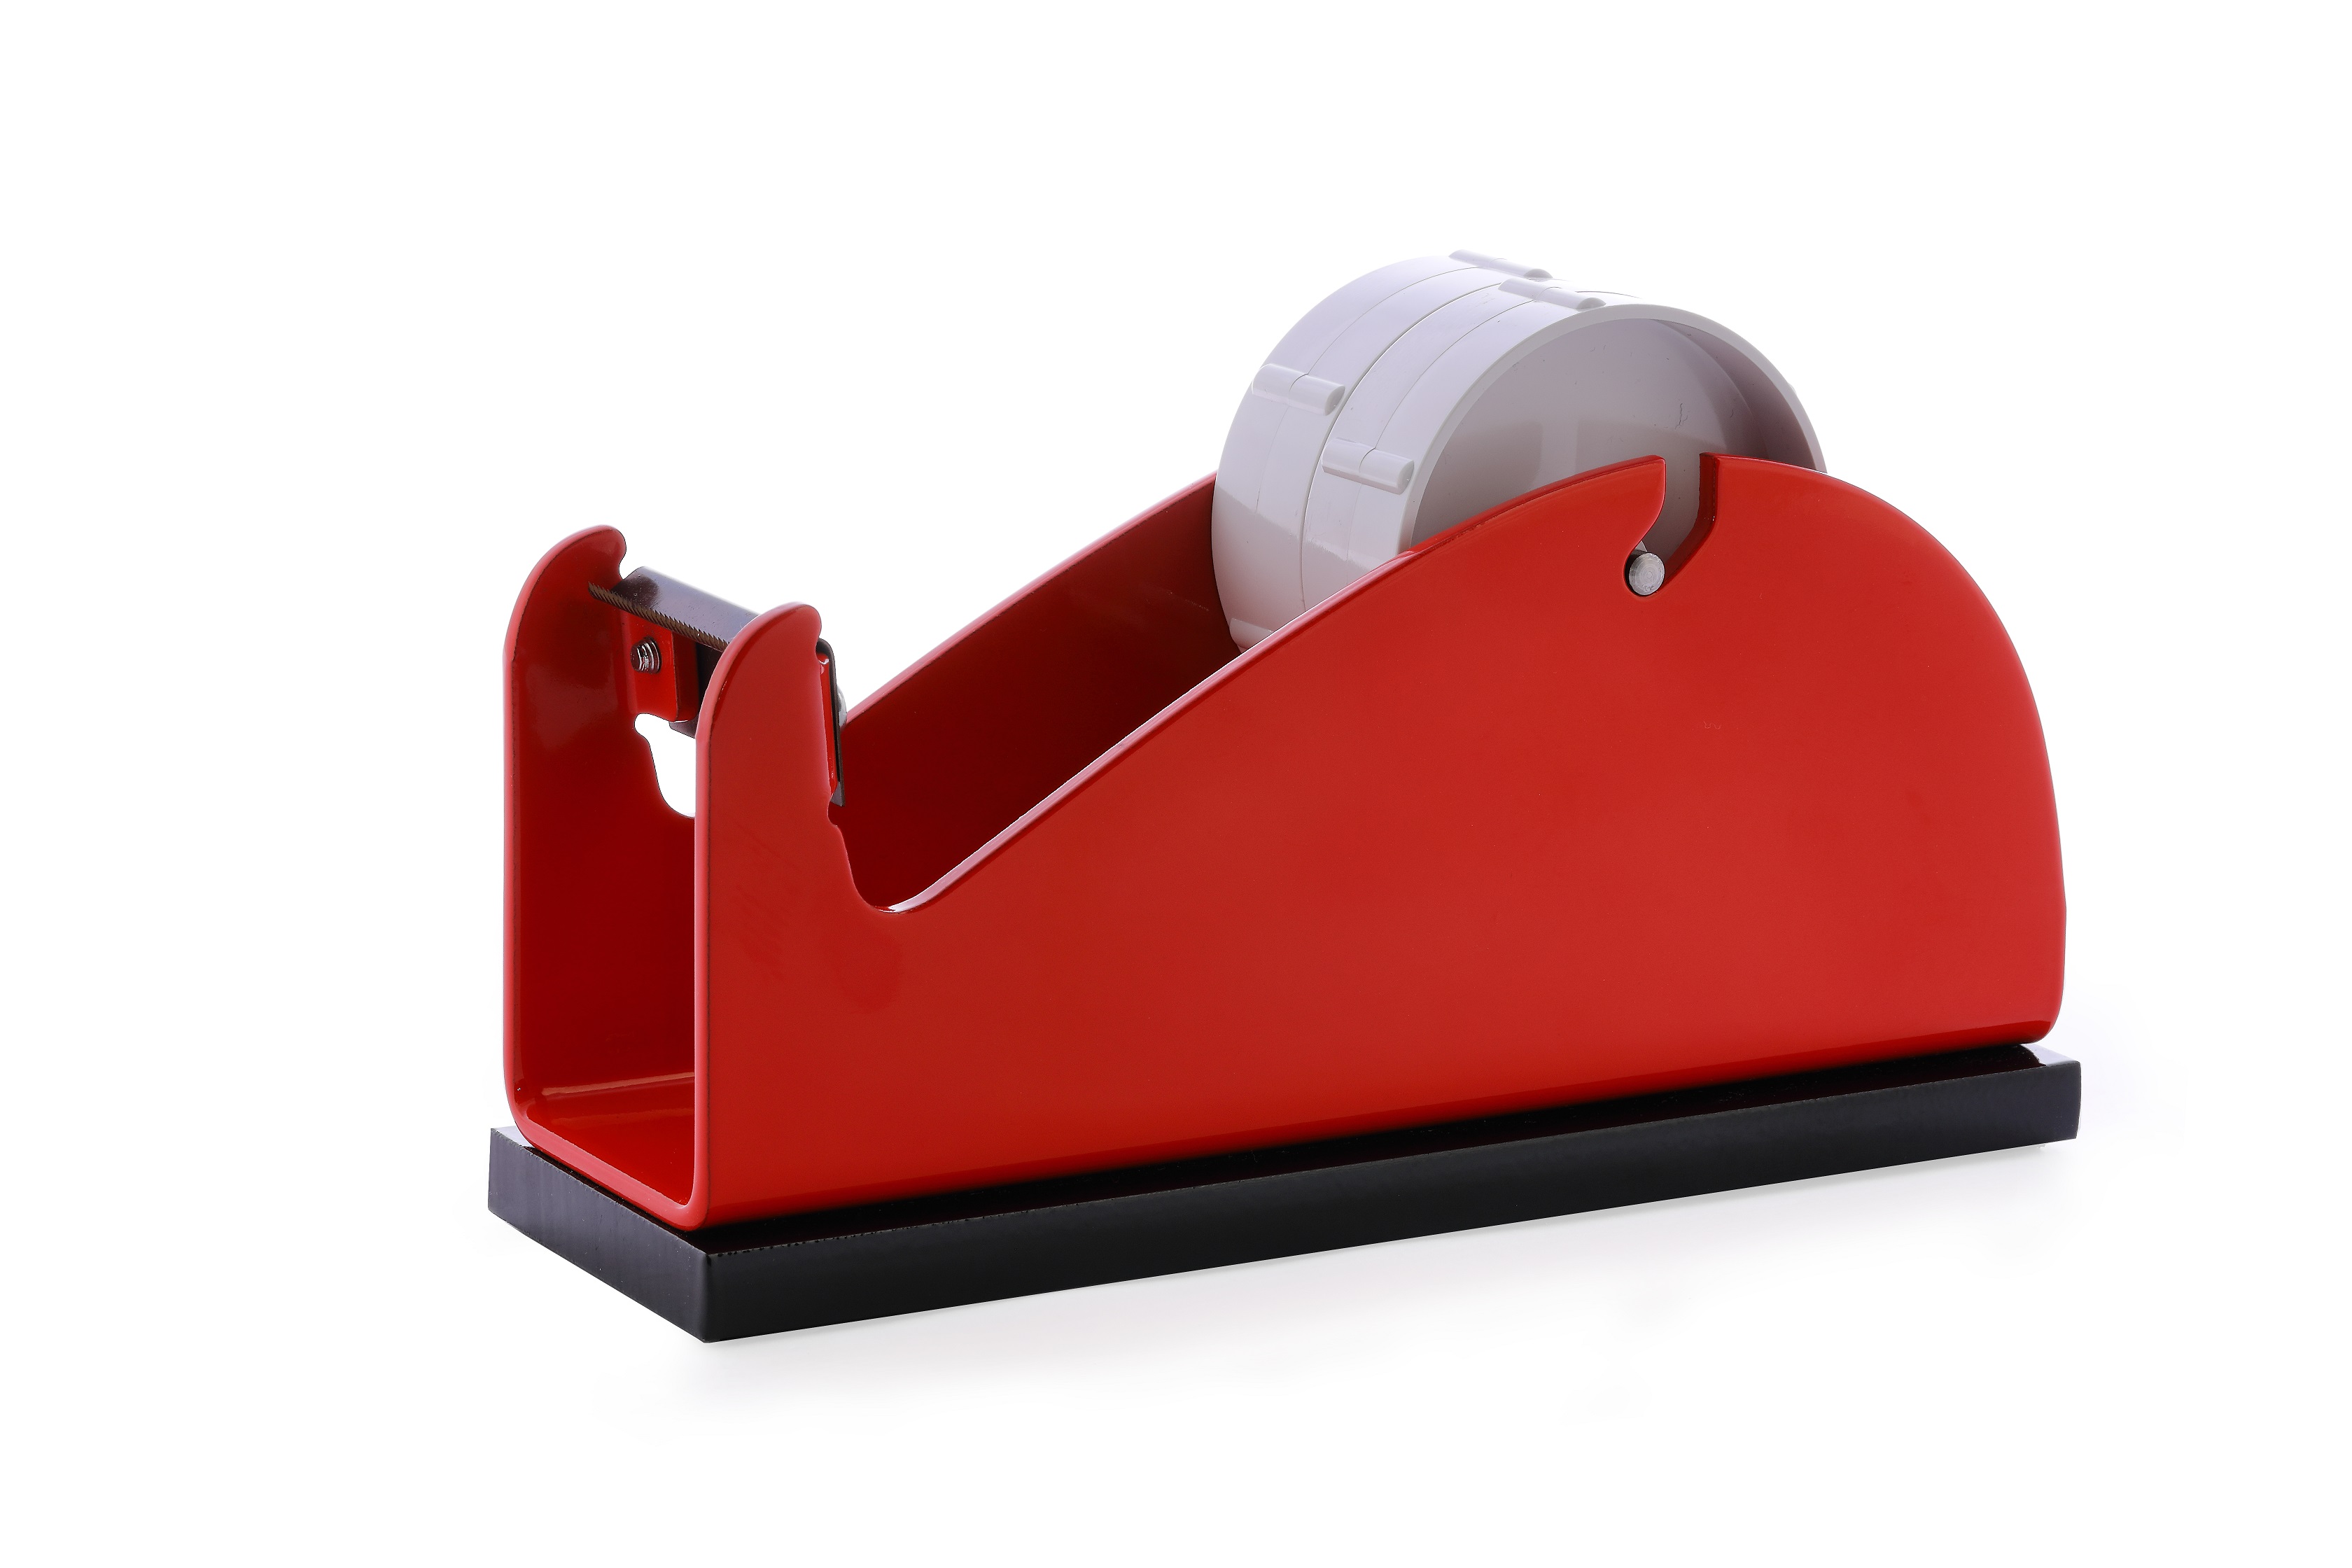 Klebeband-Tischabroller Rot, mit beschwerender Platte, für 1-2 Rollen,2 x 25mm Bandbreite, 145mm Außendurchmesser